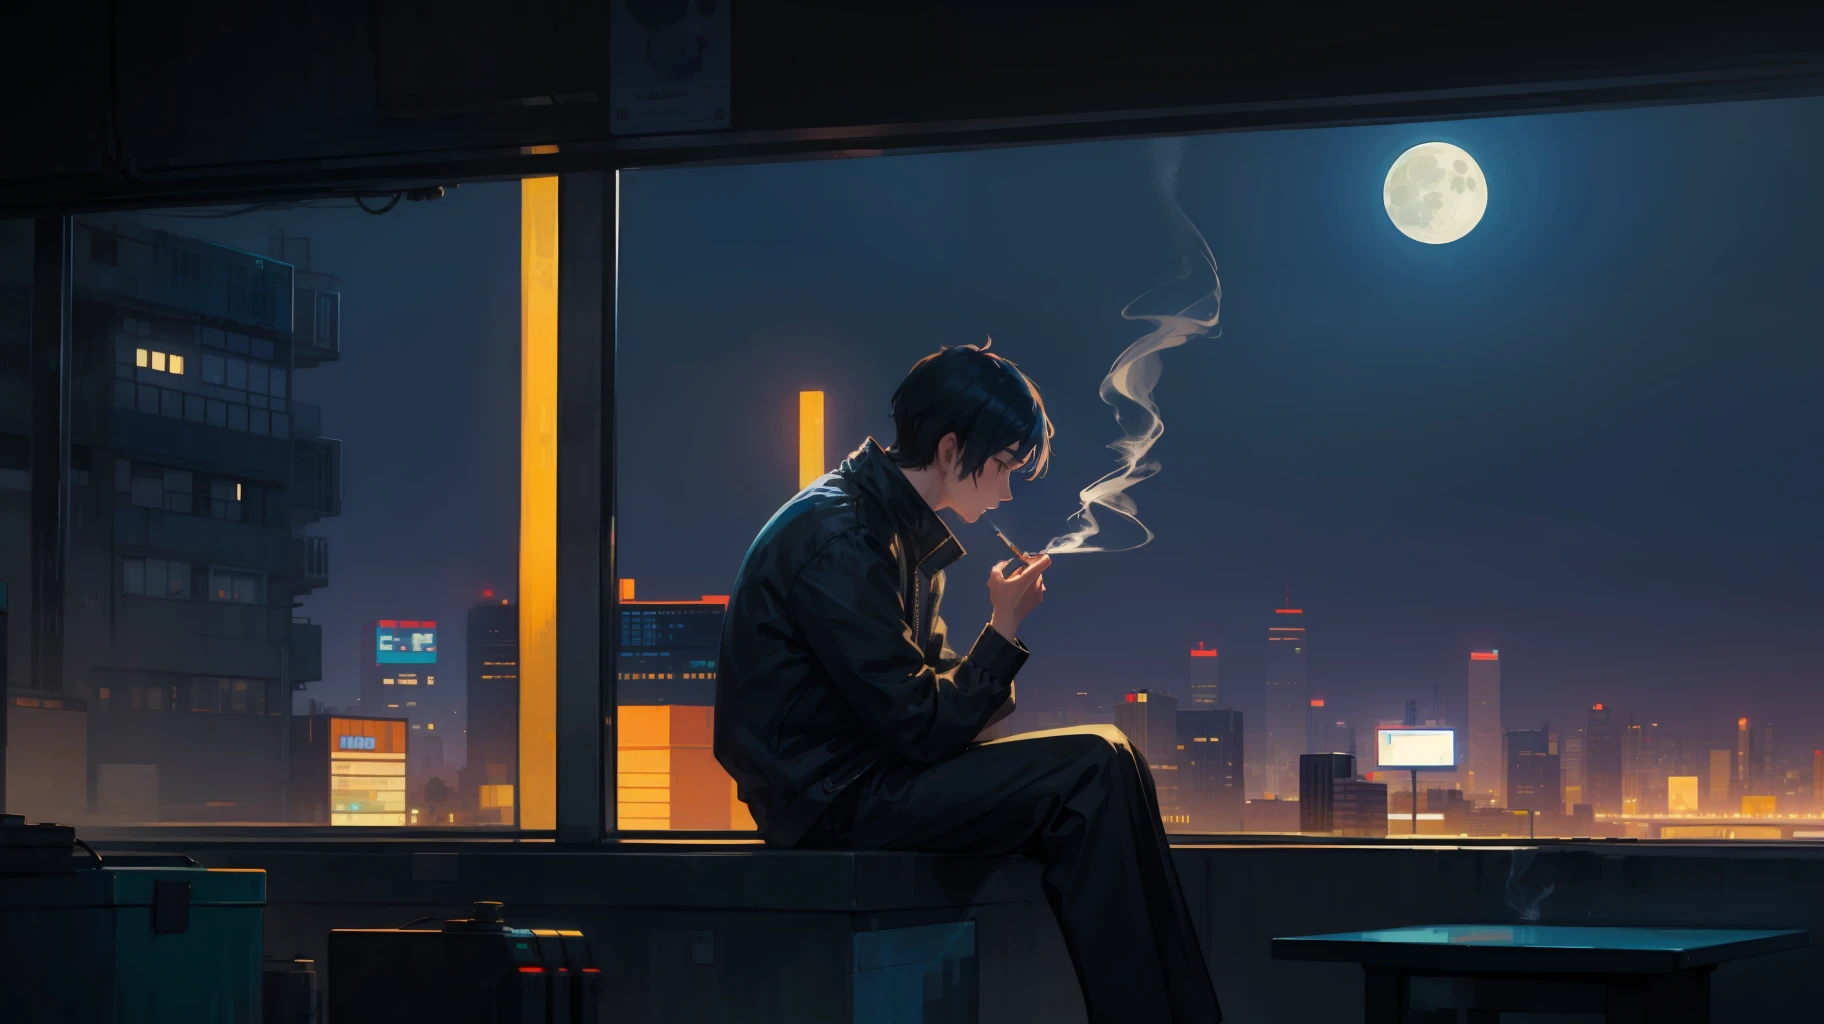 пиксельарт 2d мужчина курит сигарету в следующем окне глядя на луну пиксель арт стиль киберпанк огни города футуристический город hd супер детализированный 2d